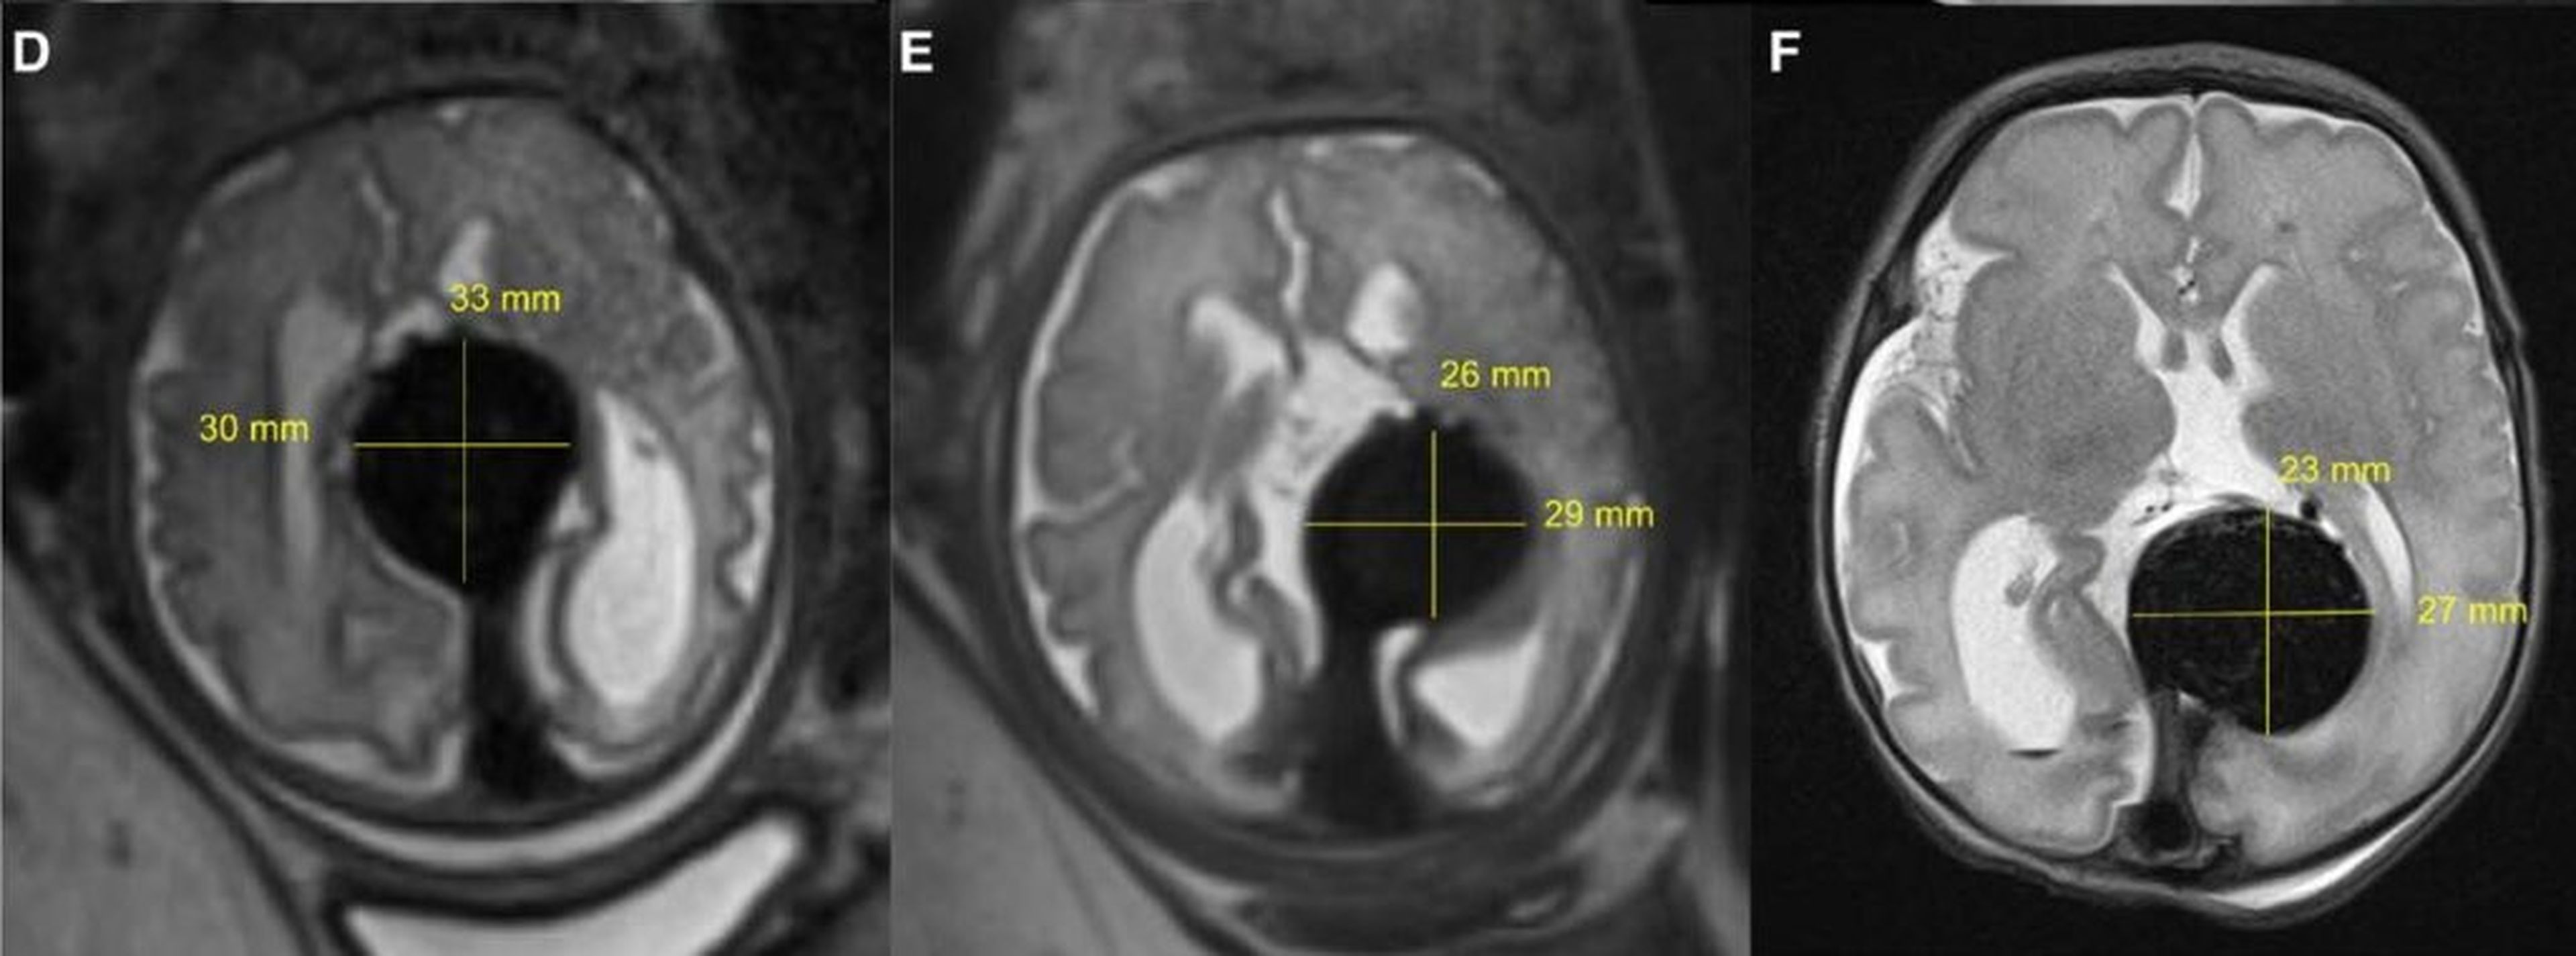 Escáneres del cerebro del bebé que muestran el tamaño de la anomalía a medida que se reduce, desde la izquierda: antes de la embolización, justo después y justo después de nacer el bebé.